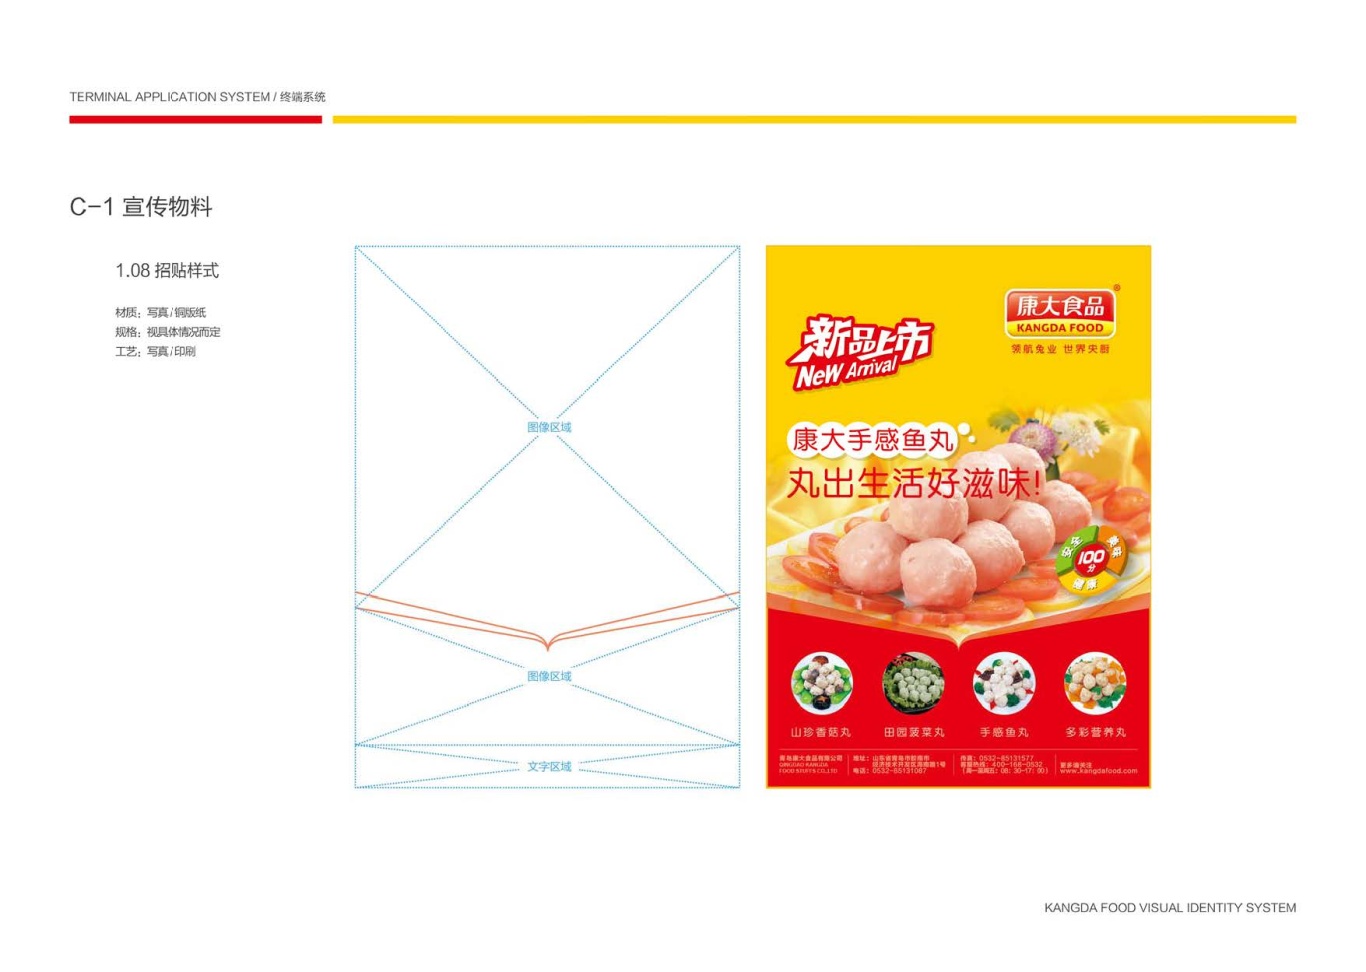 上市公司-康大食品品牌logo及VI设计图106